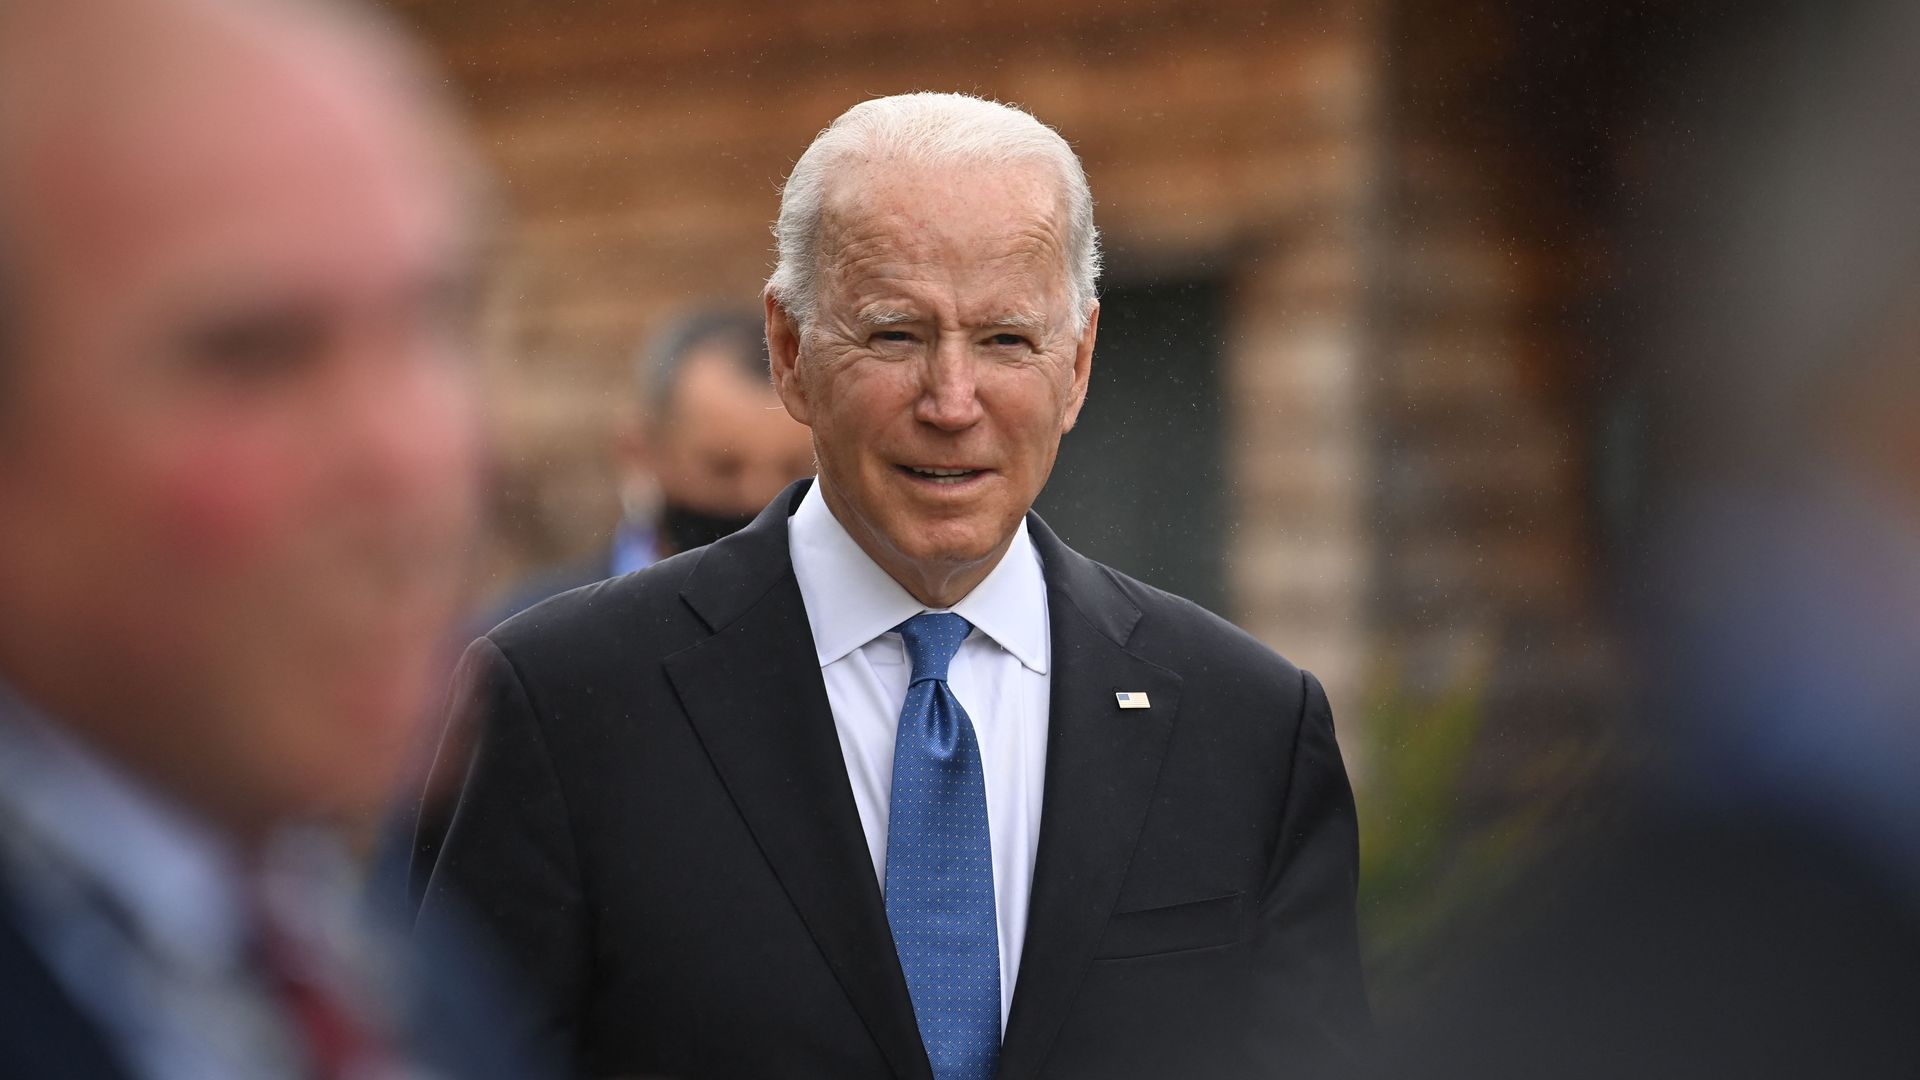 Photo of Biden in a suit